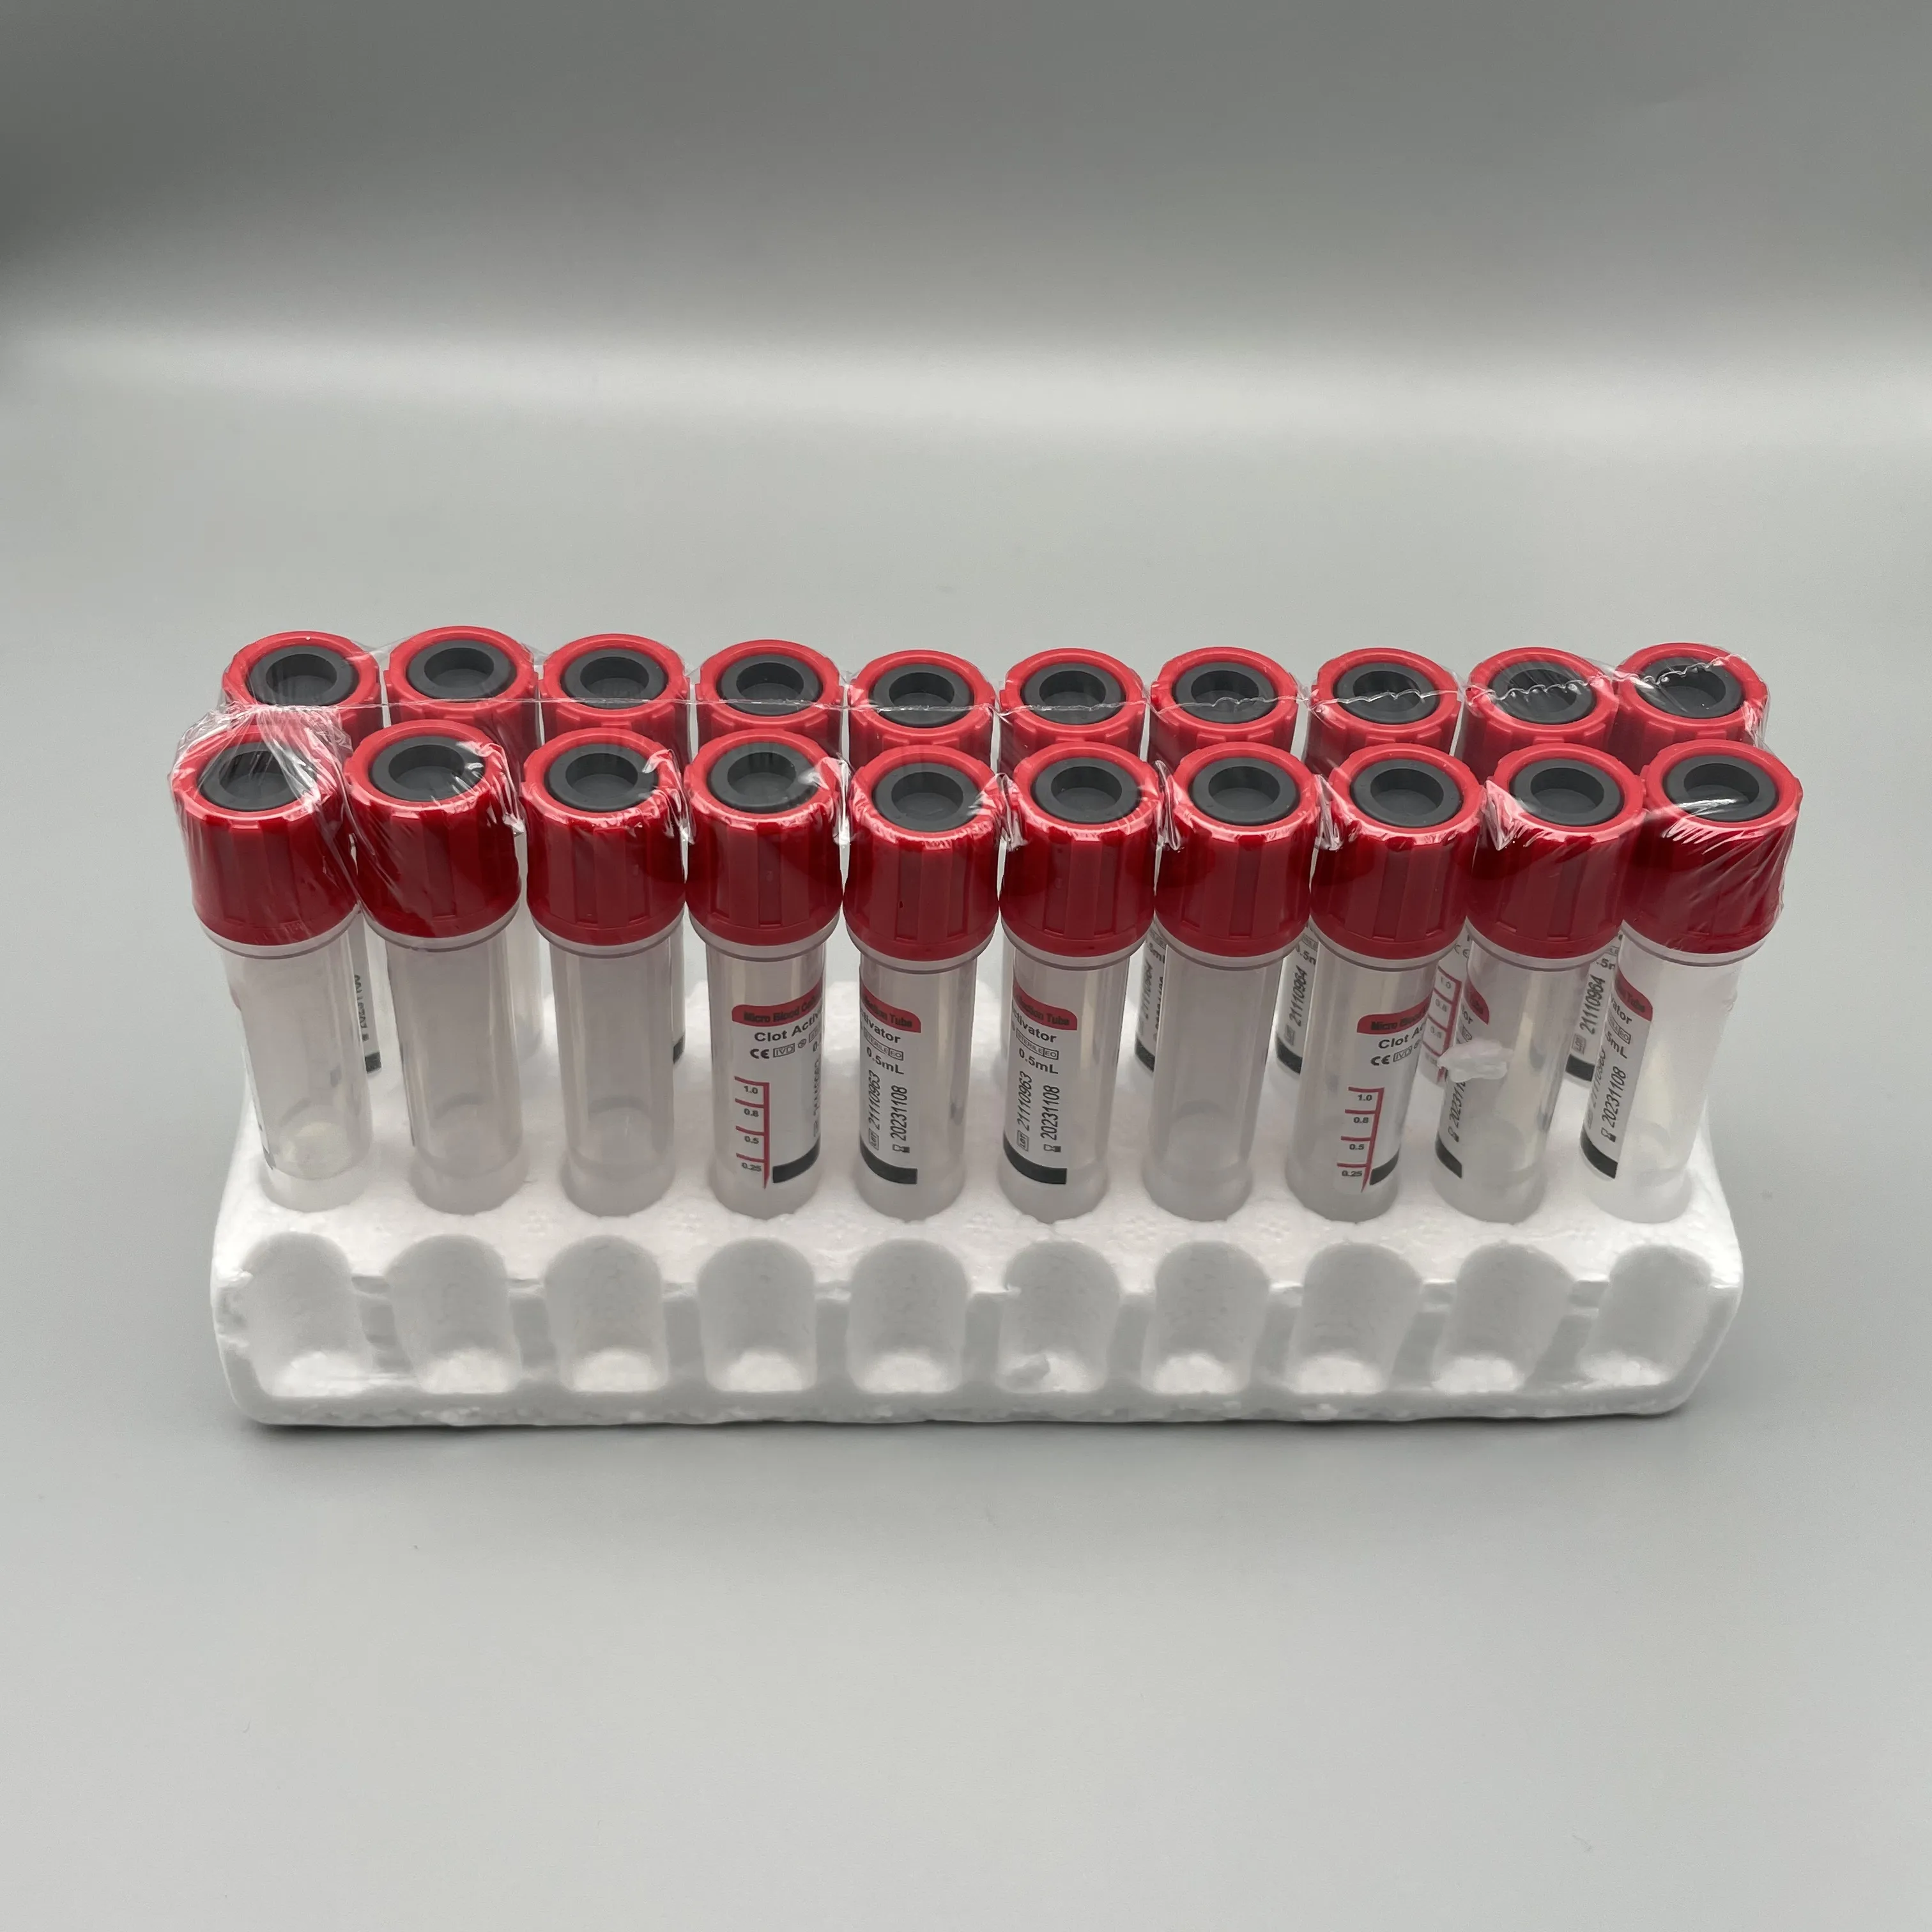 Tubos desechables de plástico para la extracción de muestra de sangre al vacío, microtenedor rojo Bd, producto en oferta, buen precio